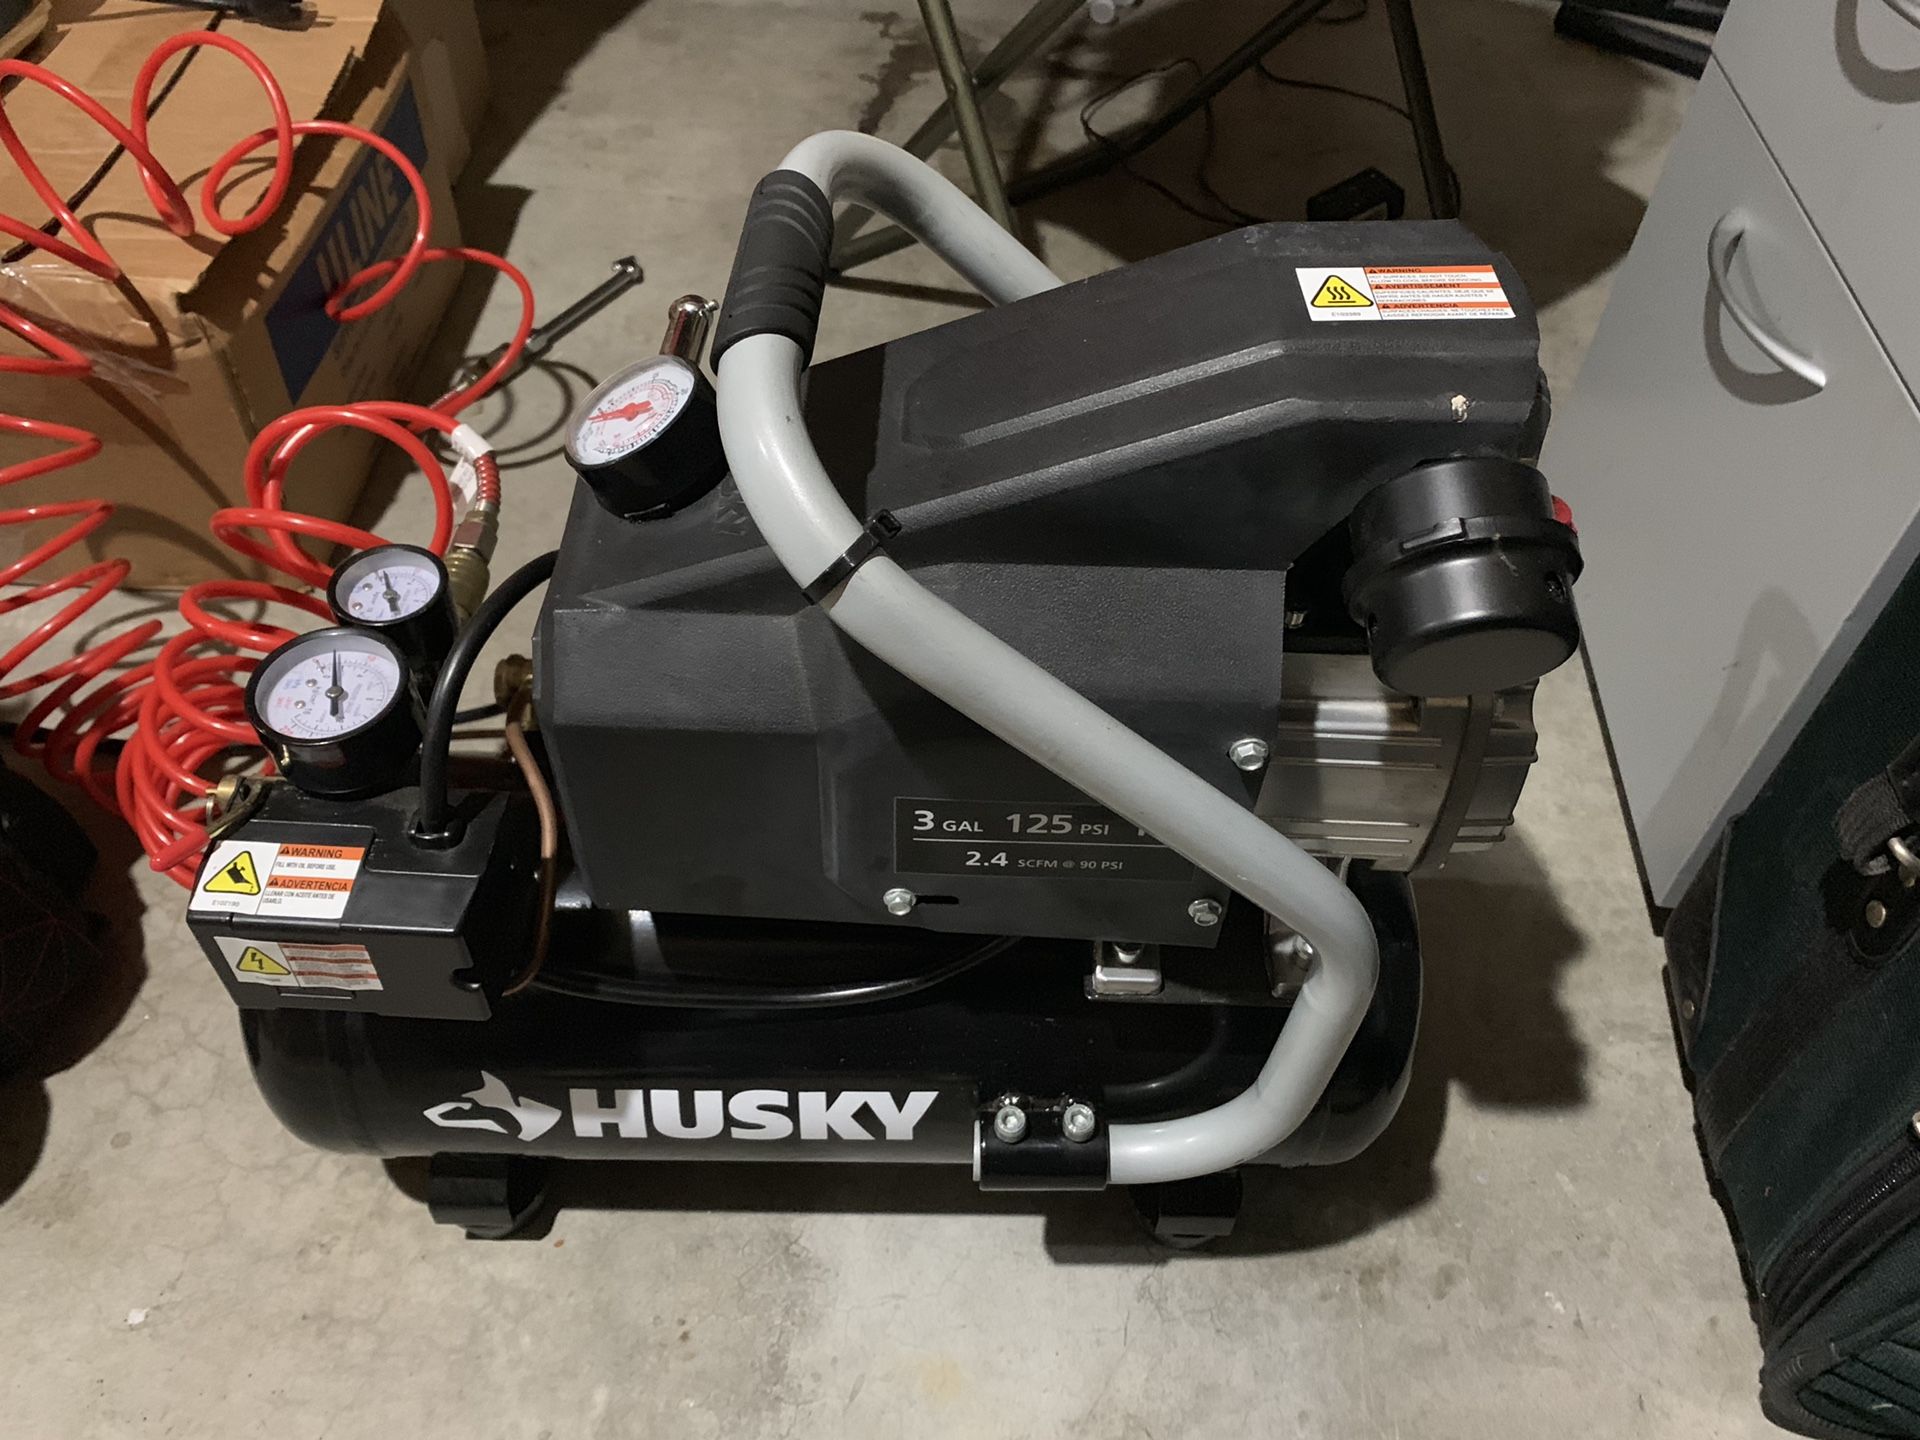 Husky 3gal compressor